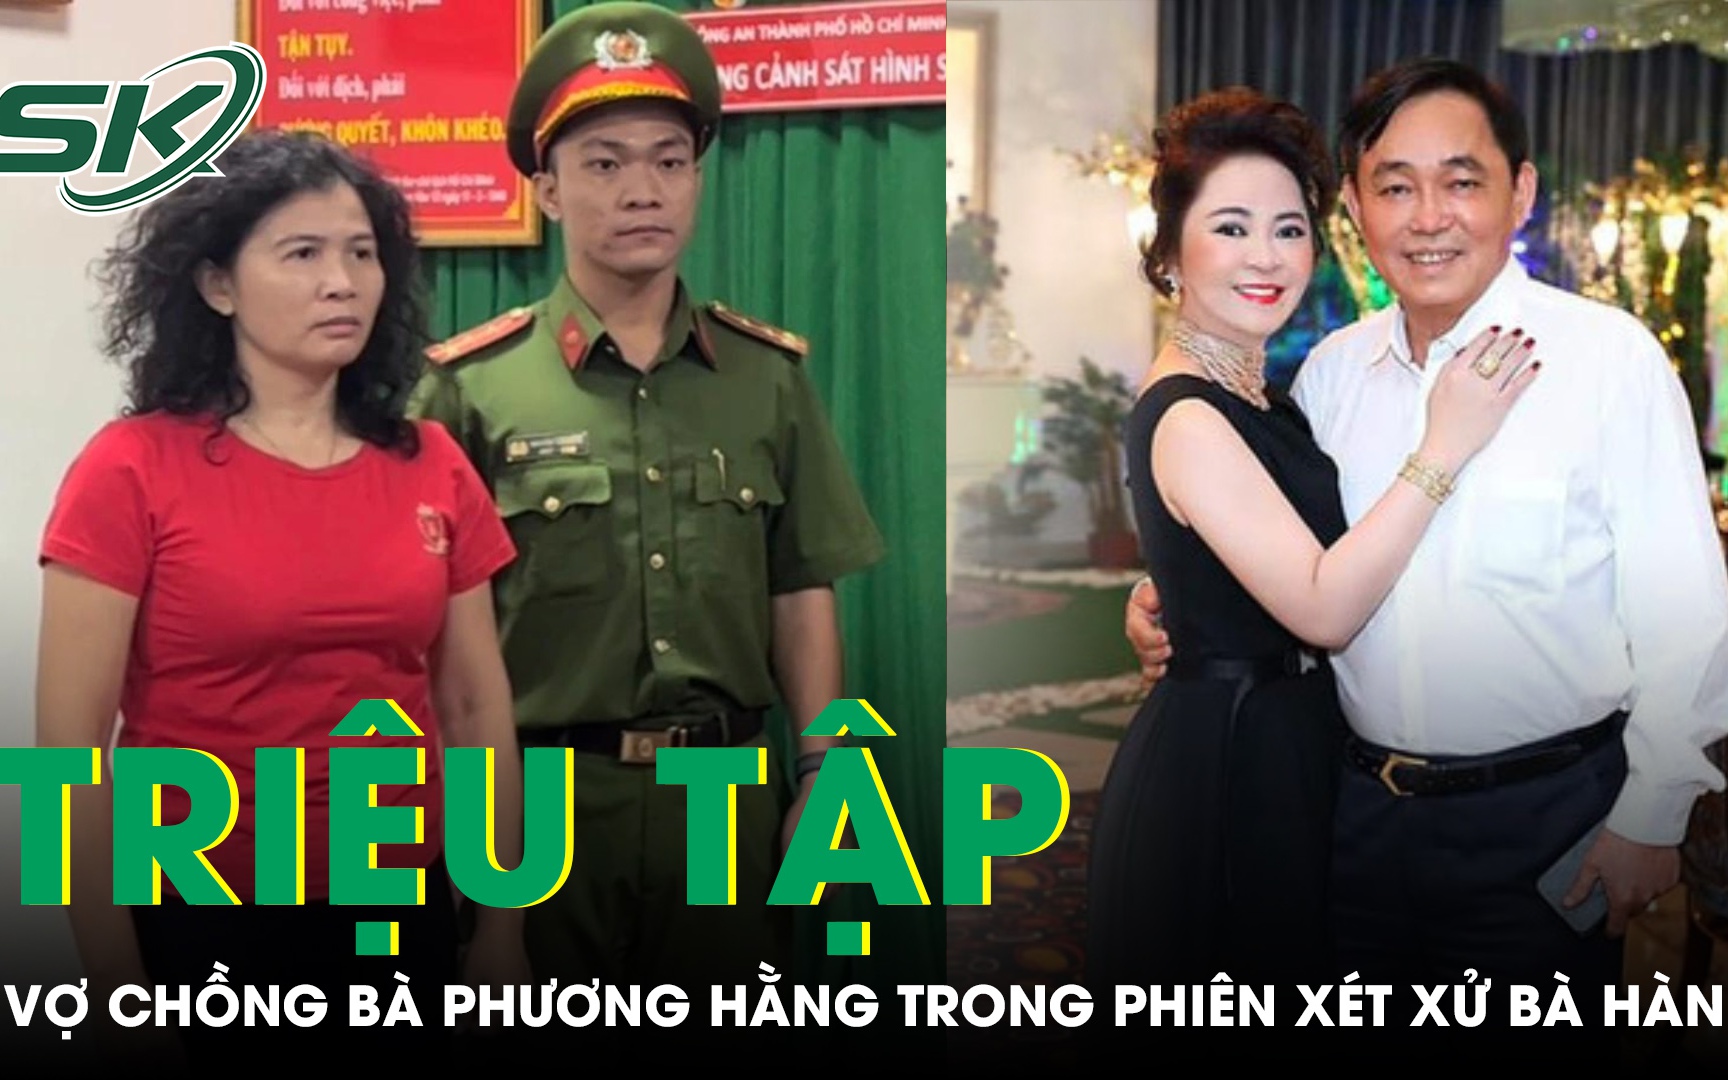 Tống đạt quyết định và triệu tập vợ chồng bà Phương Hằng trong phiên xét xử nhà báo Hàn Ni